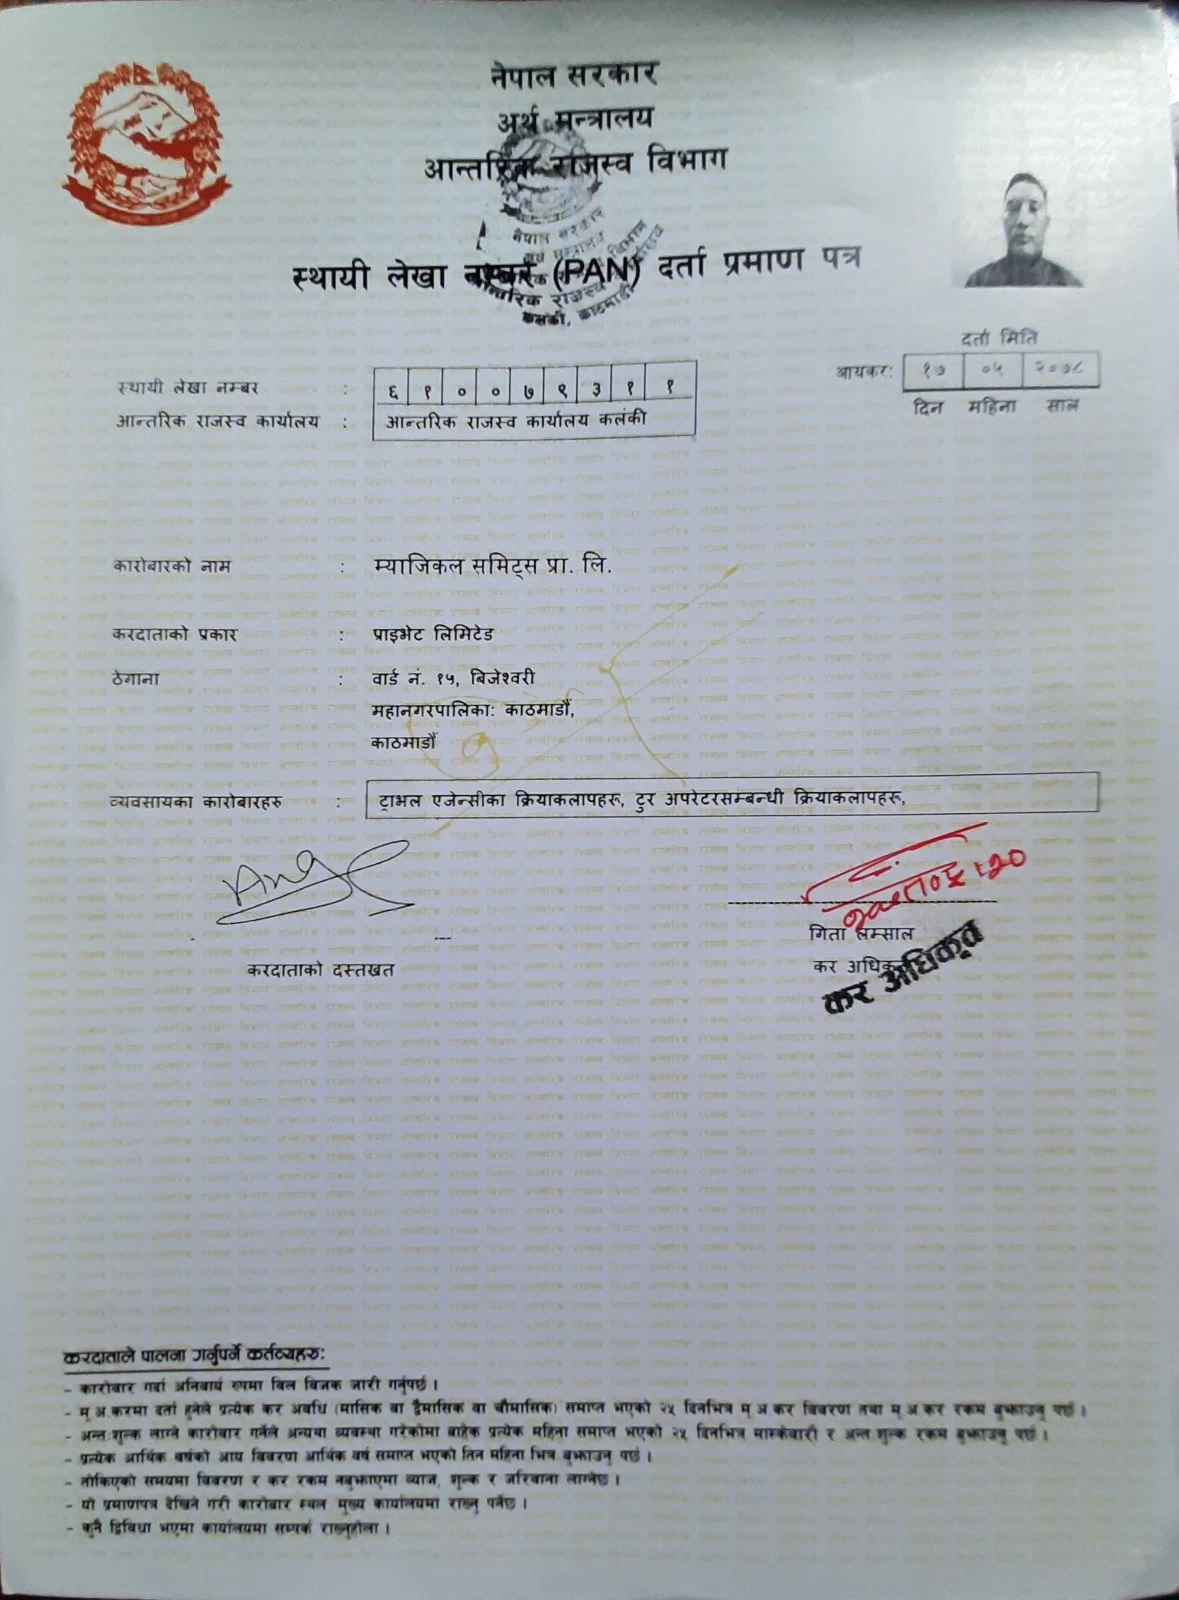 PAN Certificate